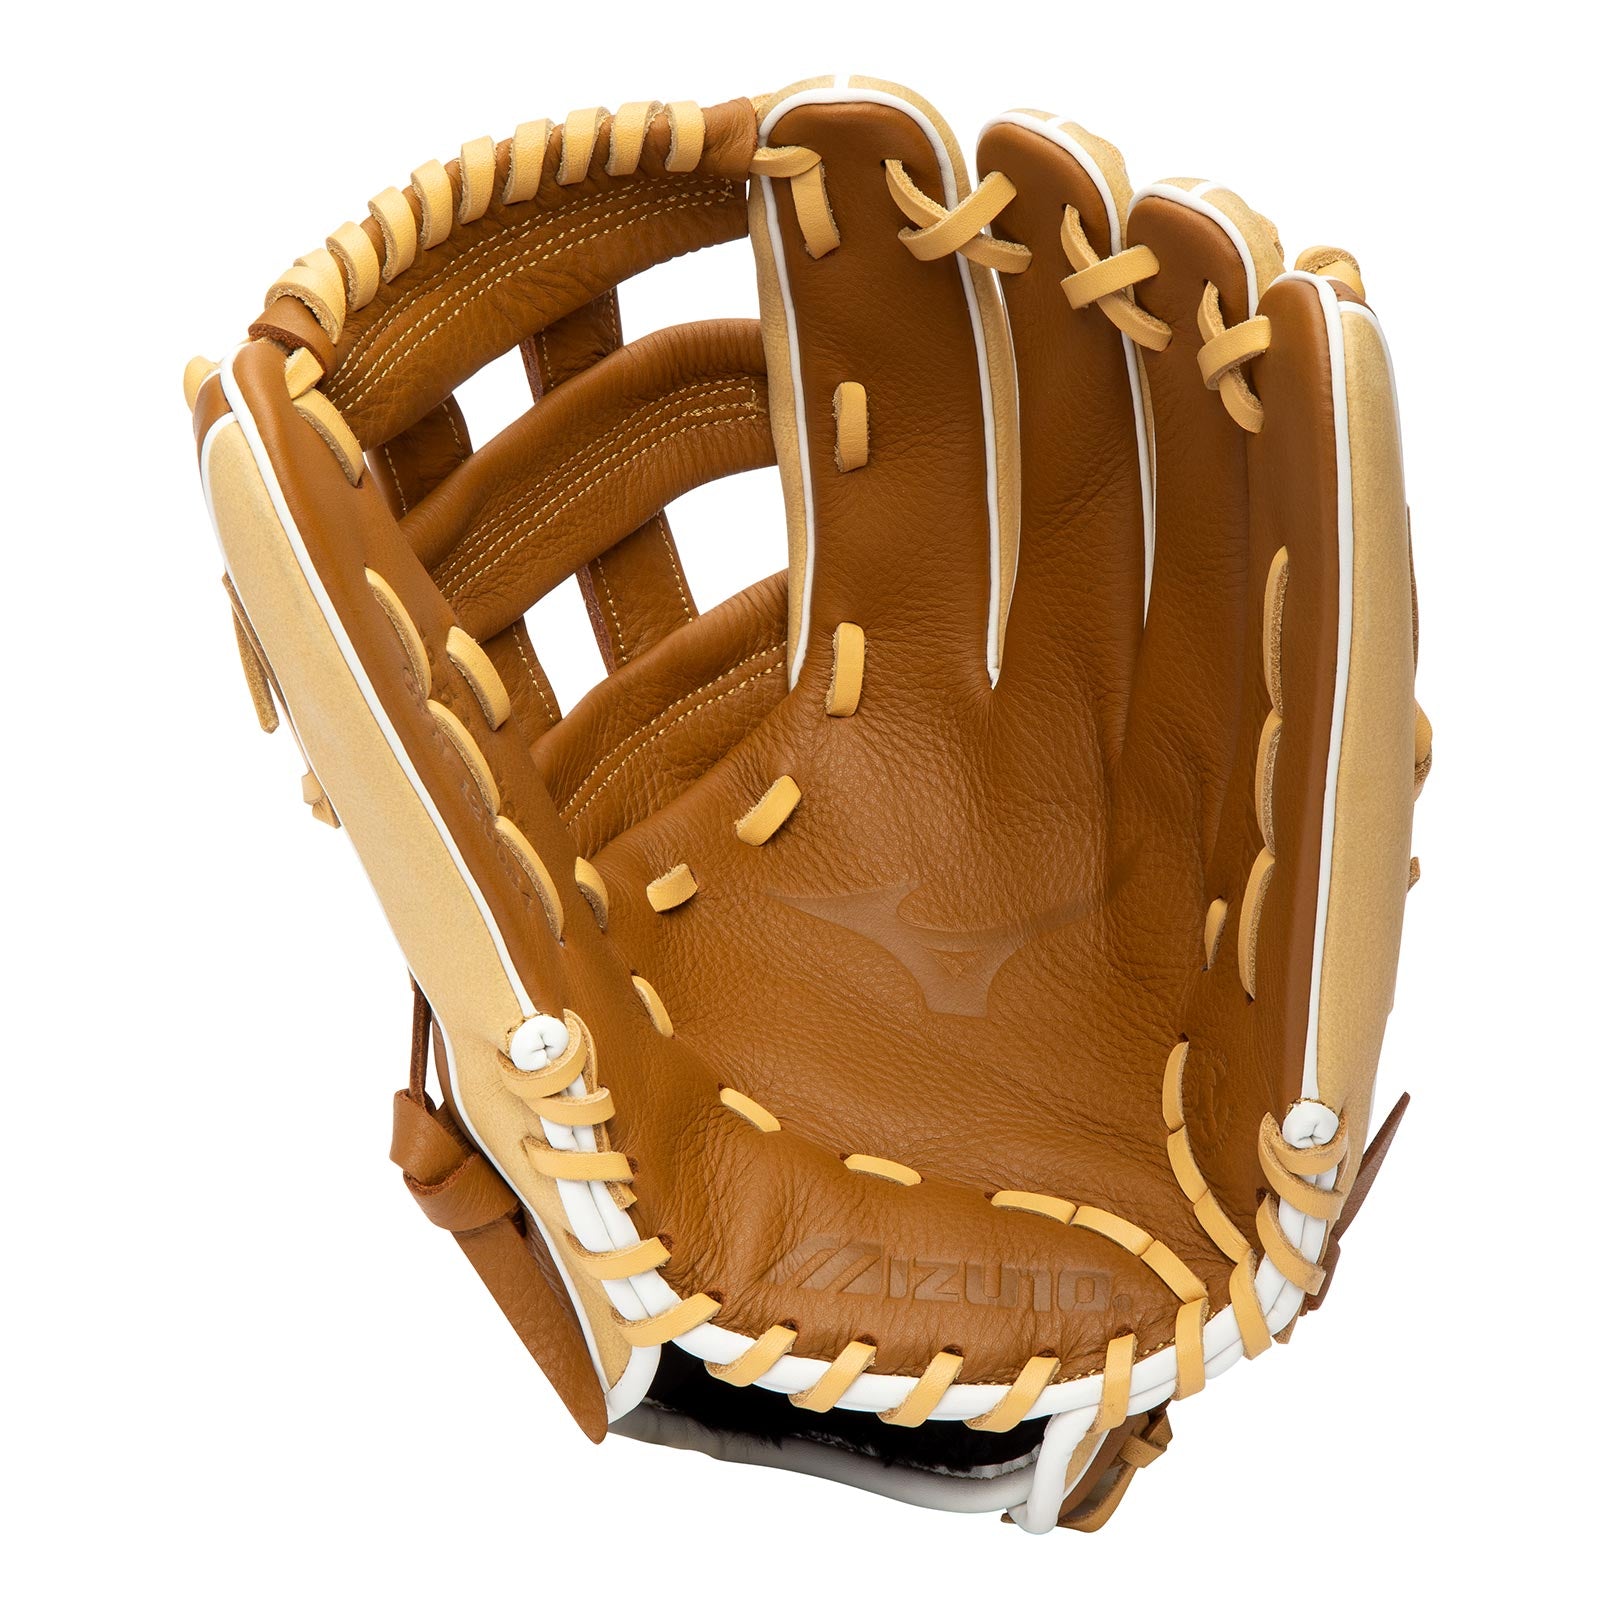 Mizuno Franchise Baseball GFN1250B4 12.5" Baseball Glove